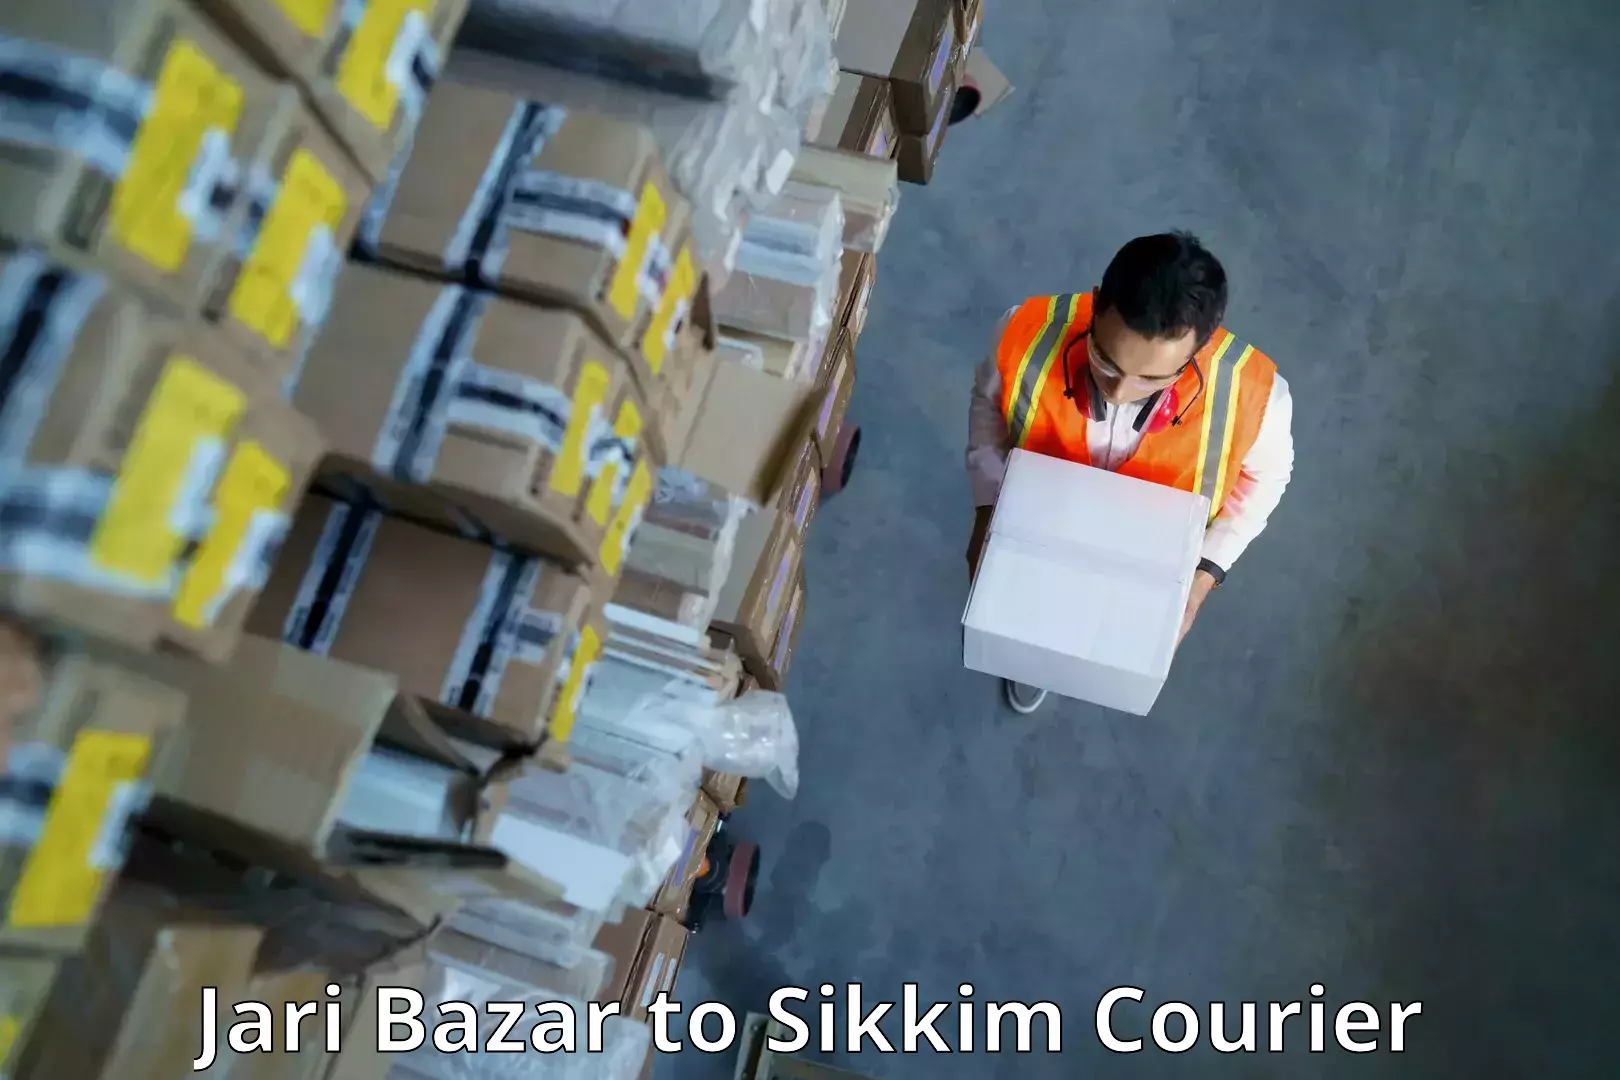 Efficient shipping platforms Jari Bazar to North Sikkim